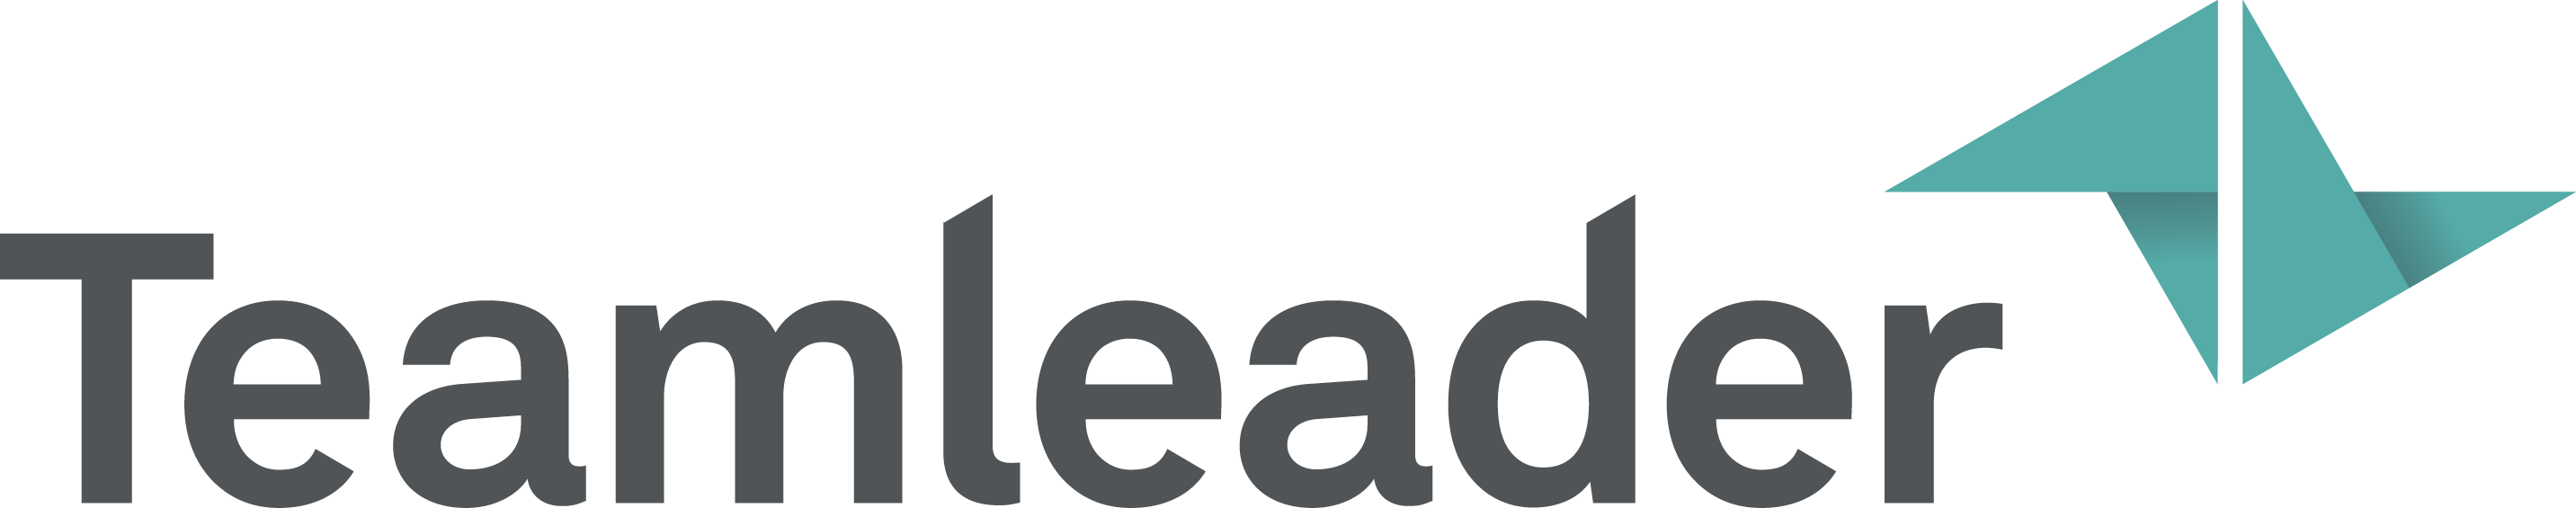 teamleader logo 1